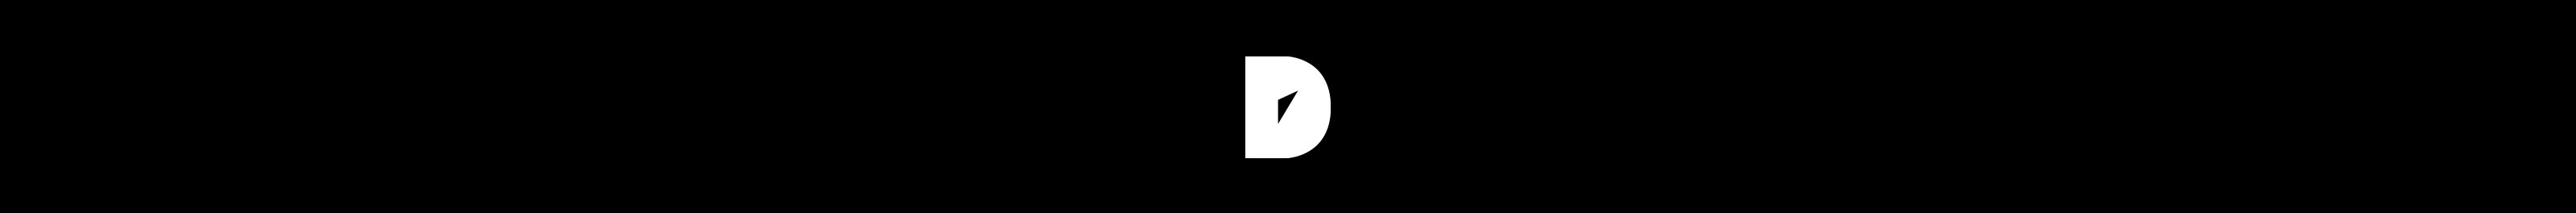 Deattive .'s profile banner